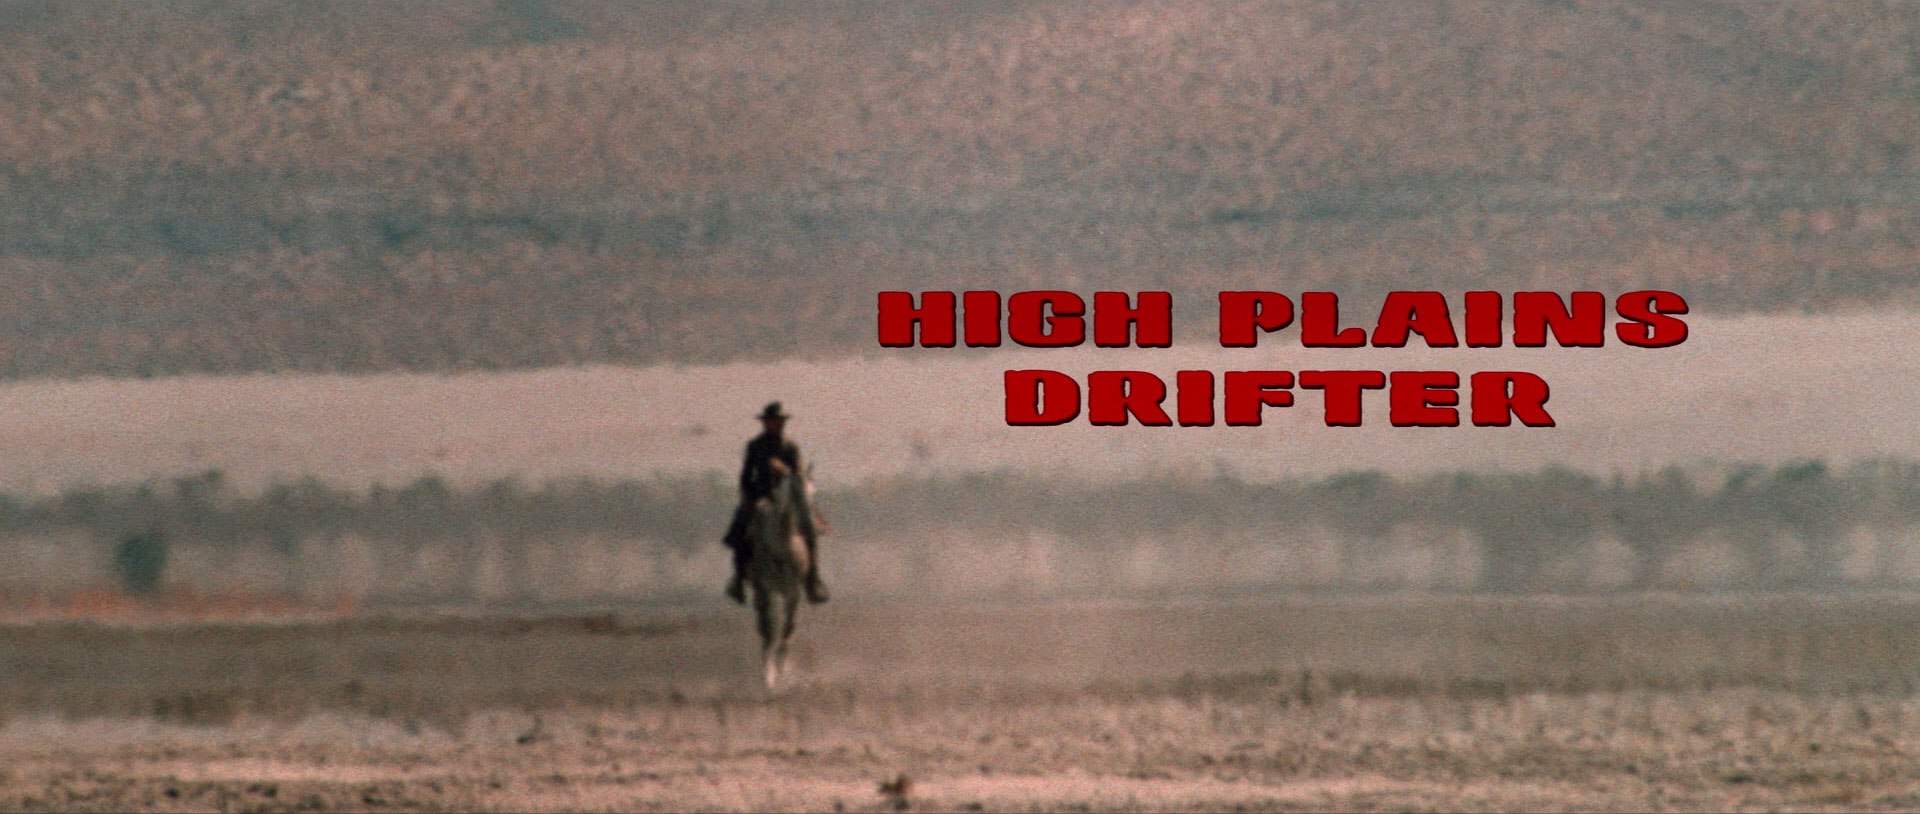 High Plains Drifter HD wallpapers, Desktop wallpaper - most viewed